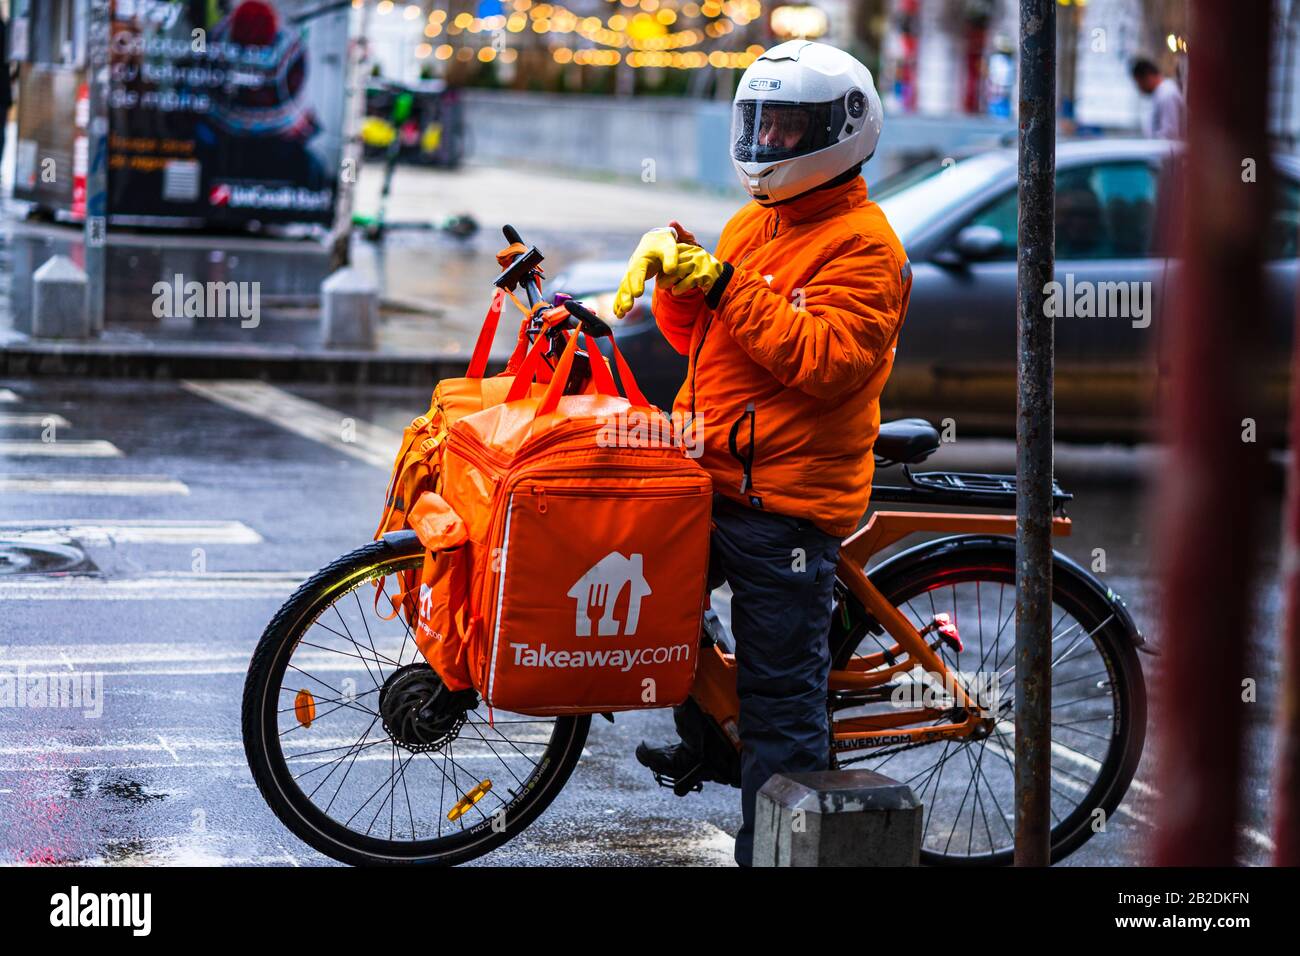 Junger Mann auf einem Elektrobike mit takeaway.com Logo, der während eines regnerischen Tages in Bukarest, Rumänien, 2020 Essen liefert Stockfoto